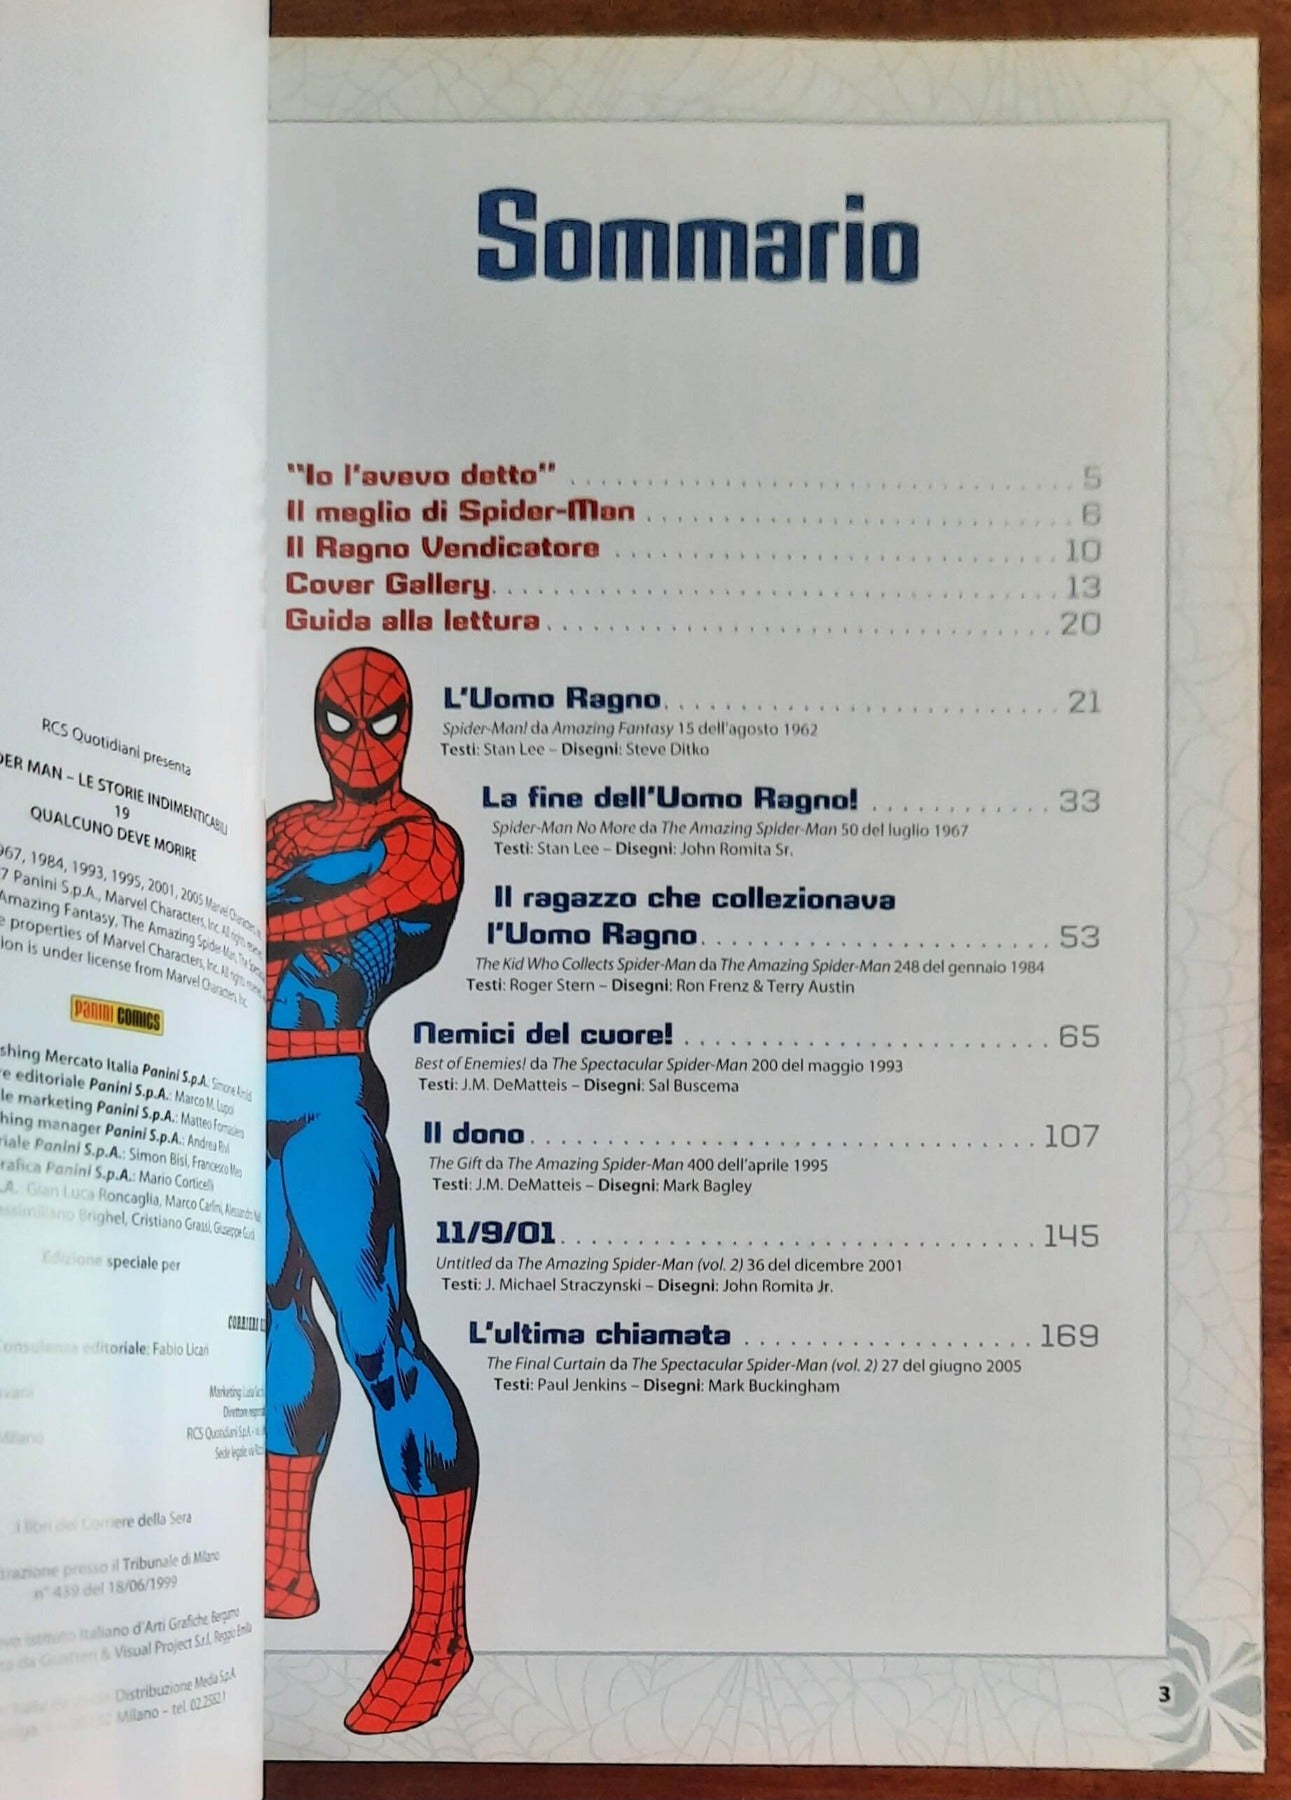 Spider-Man: Le storie indimenticabili - Vol. 19 - Qualcuno deve morire